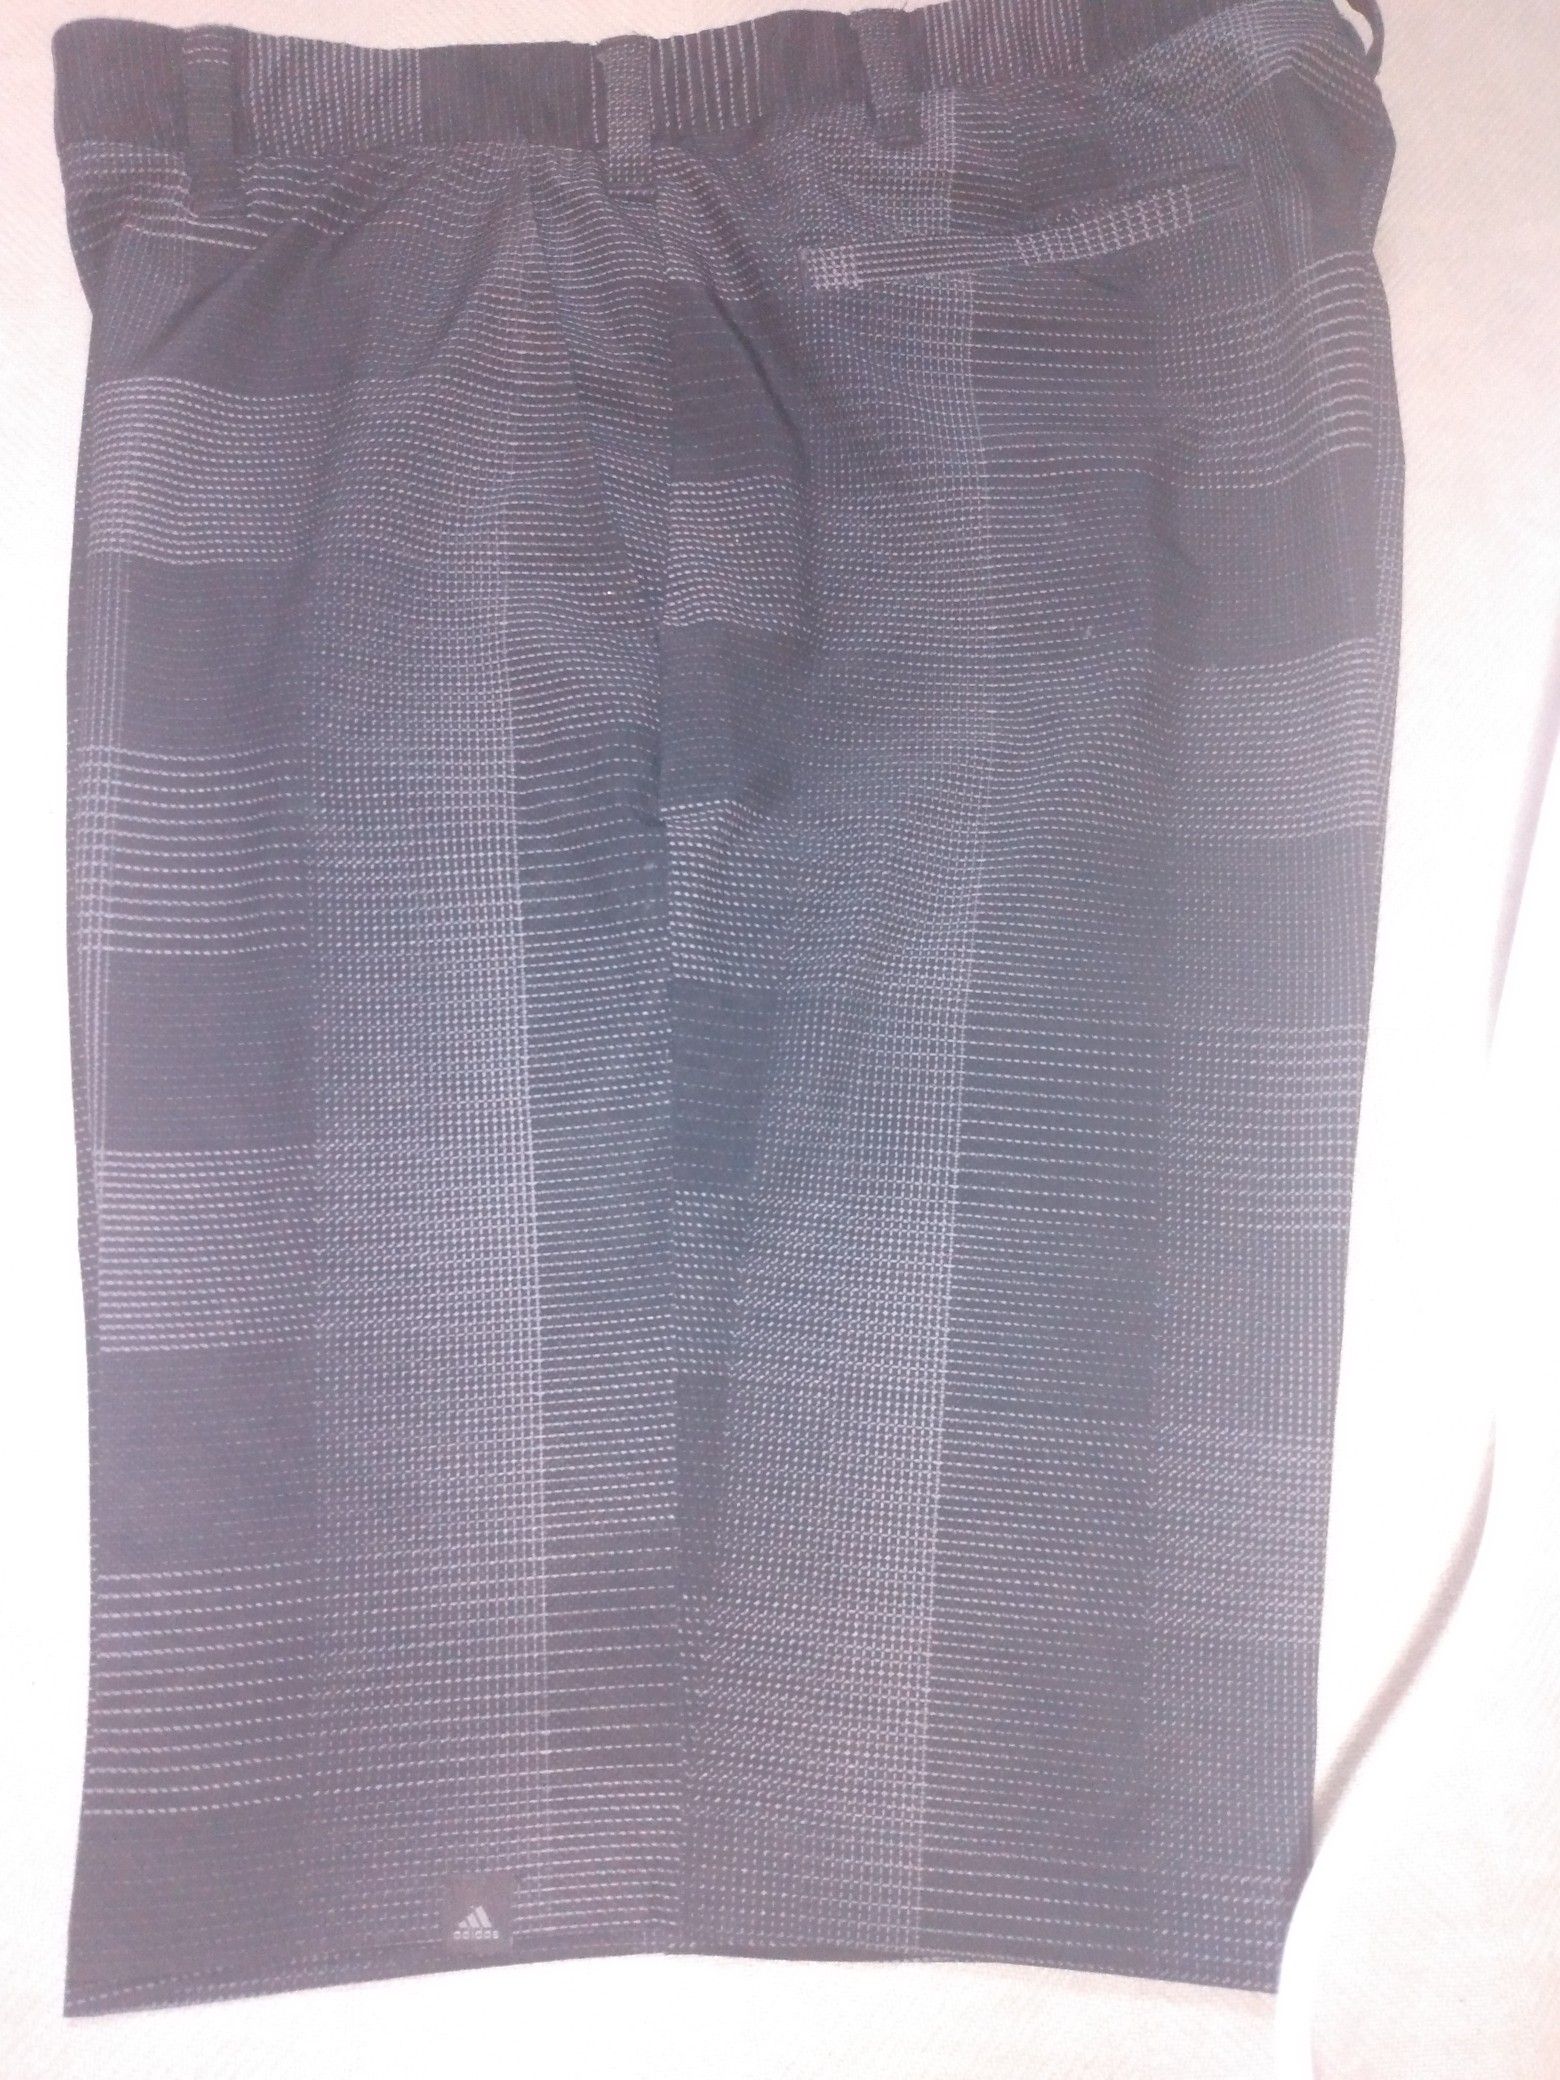 Adidas grey plaid golf shorts (34)